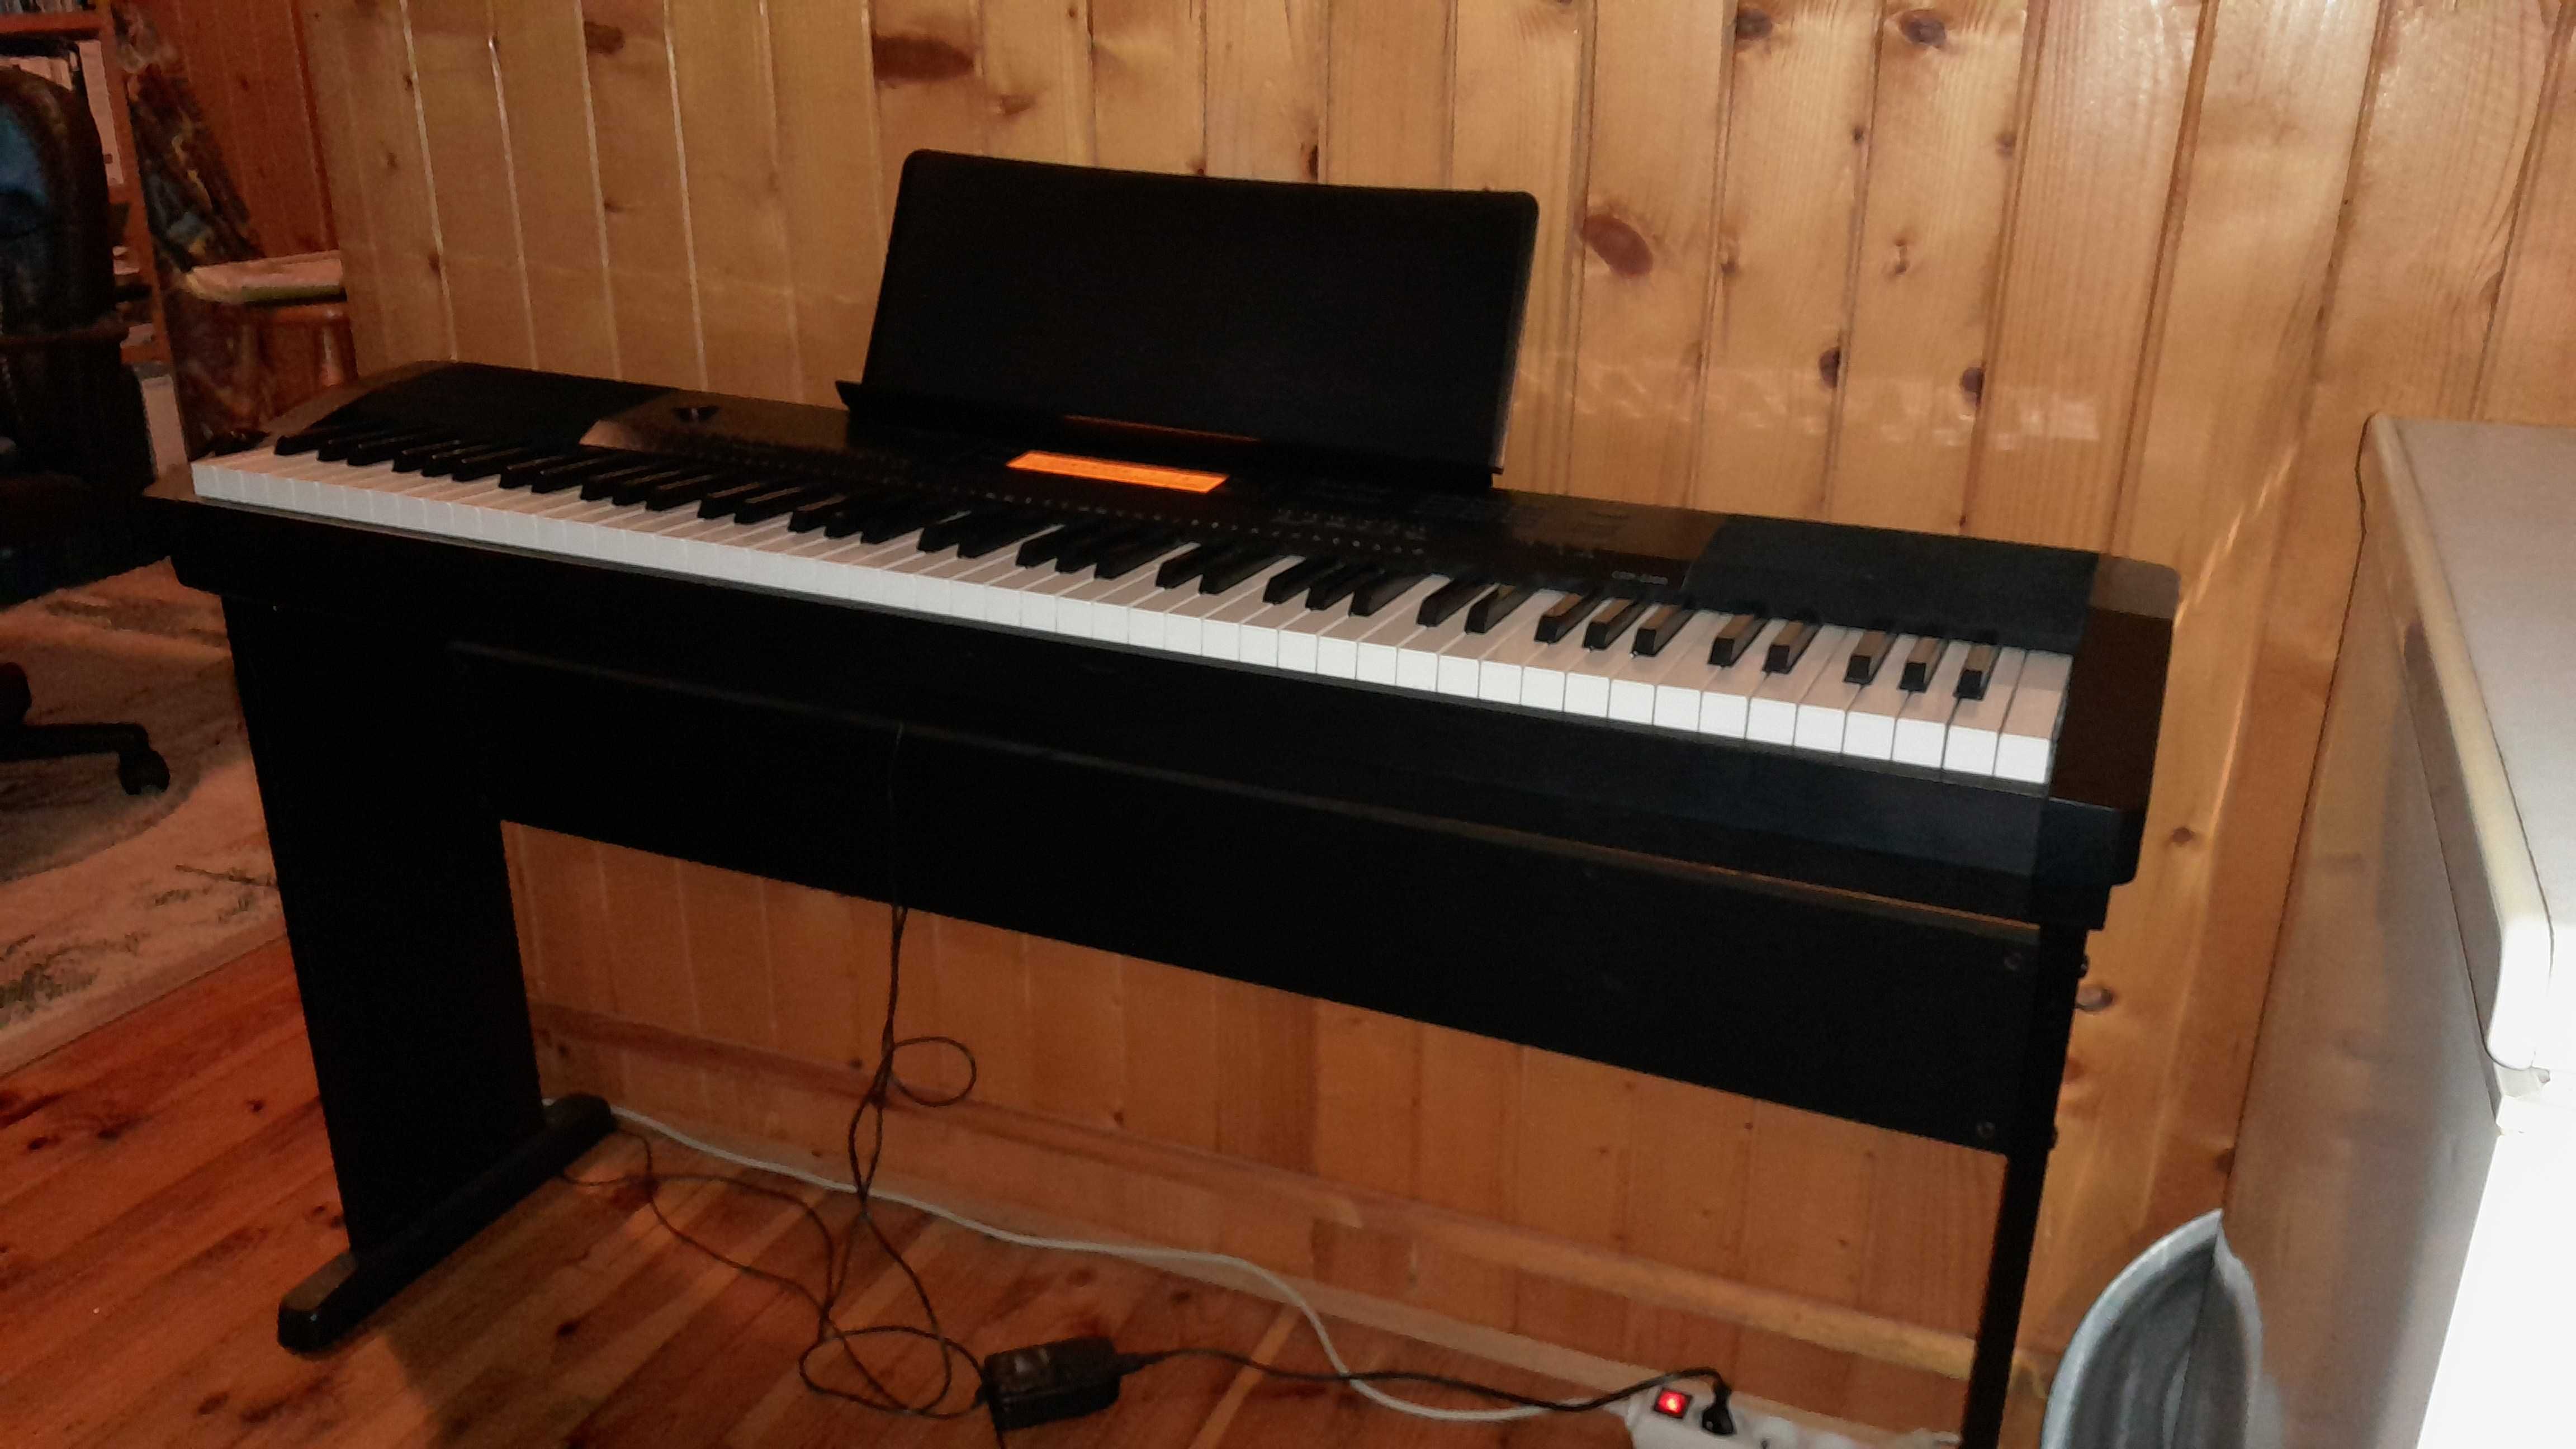 Pianino elektryczne, keyboard CPD-220R CASIO. Stan idealny